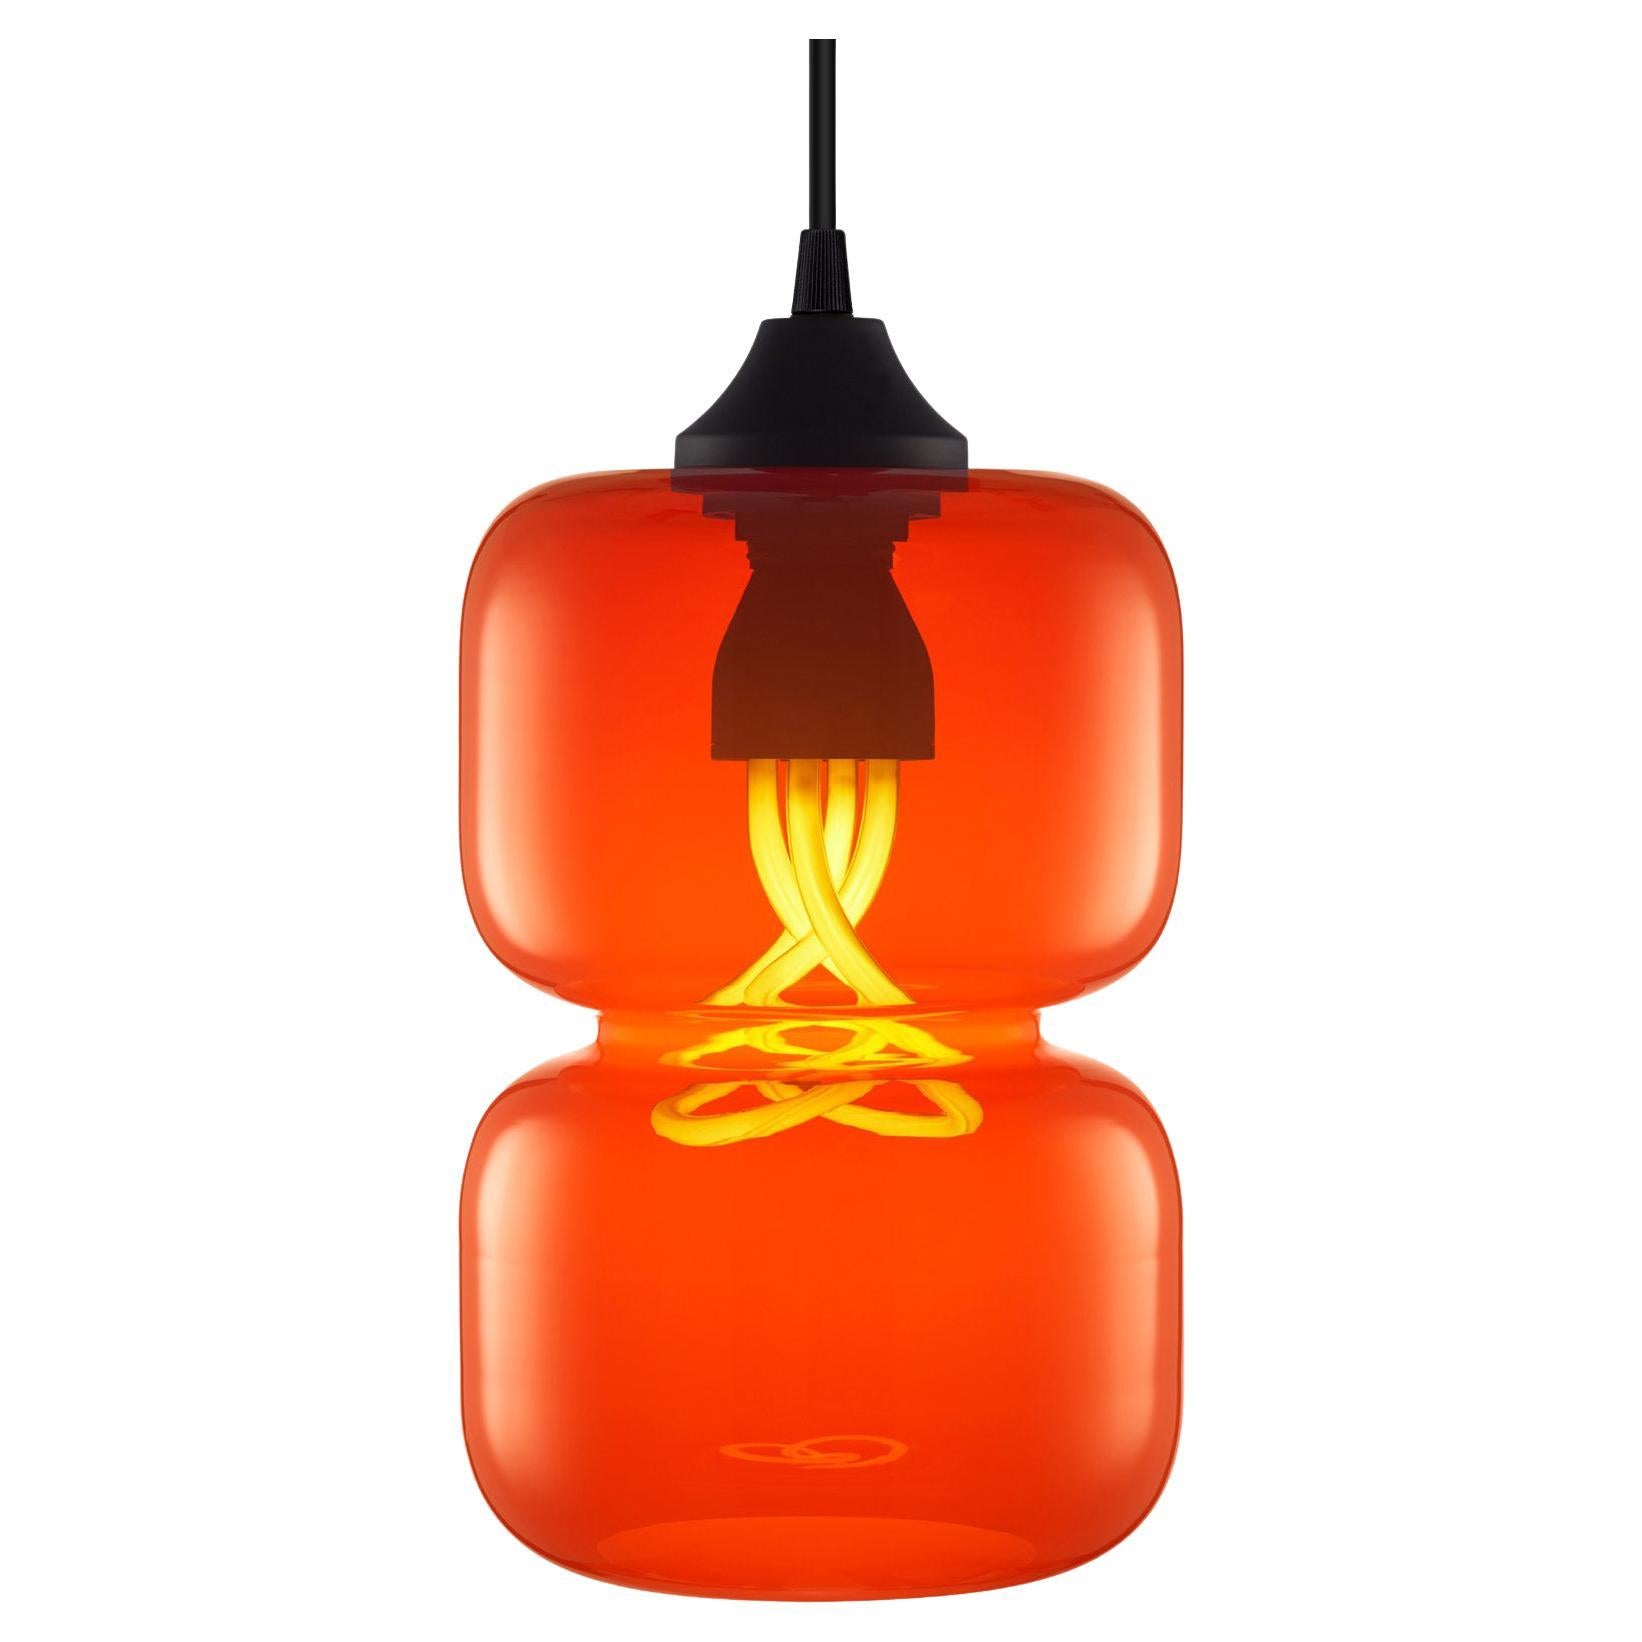 Lámpara colgante de cristal soplado Pinch Tulip, fabricada en EE.UU.